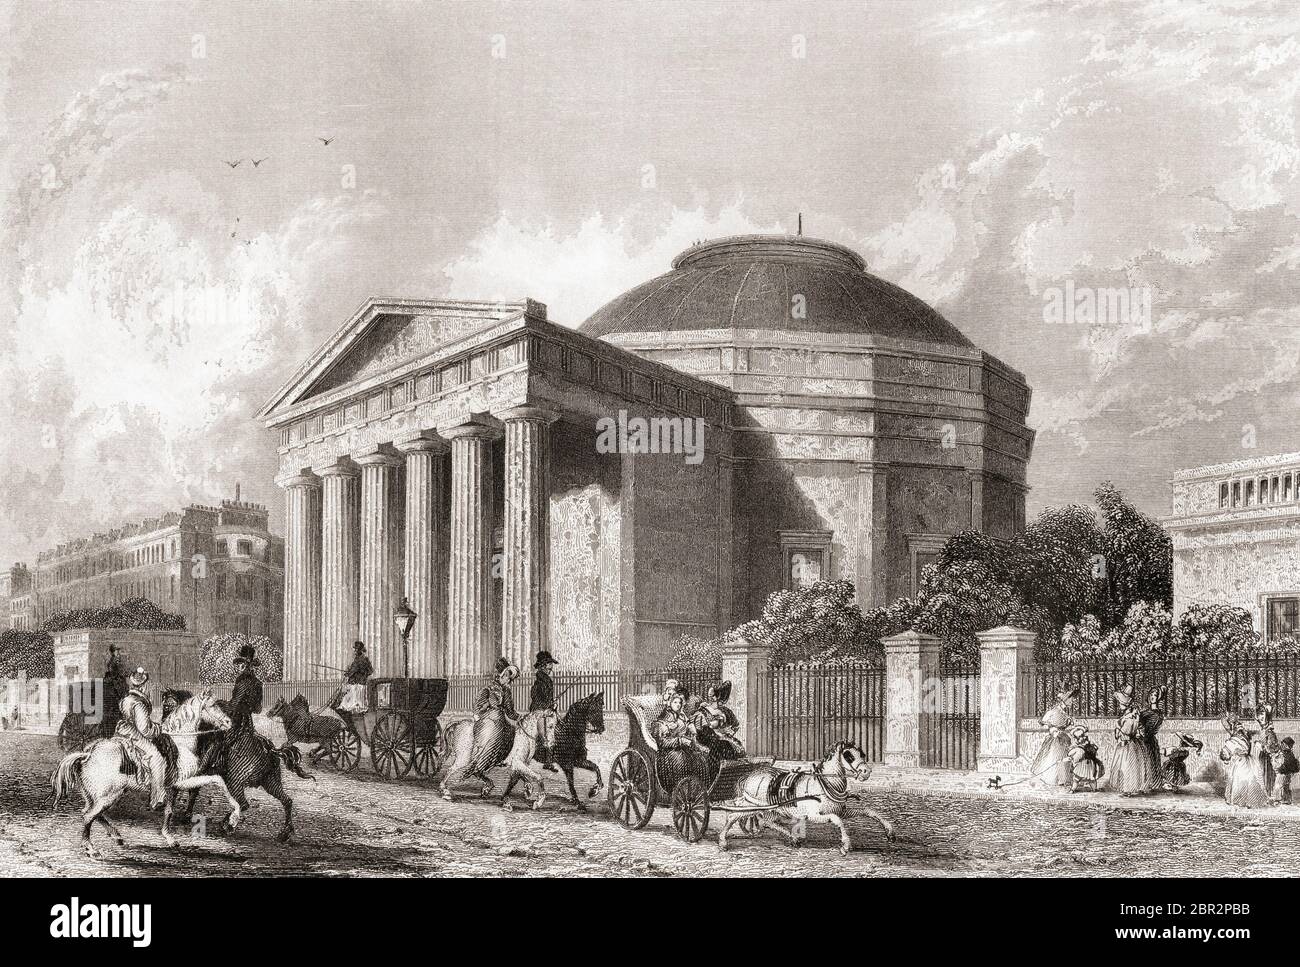 Das Kolosseum, Regent's Park, London, England, 19. Jahrhundert. Erbaut, um Thomas Hornor's 'Panoramic view of London', das größte Gemälde, das je geschaffen wurde, auszustellen, wurde es 1874 abgerissen. Aus der Geschichte Londons: Illustriert durch Ansichten in London und Westminster, erschienen um 1838. Stockfoto